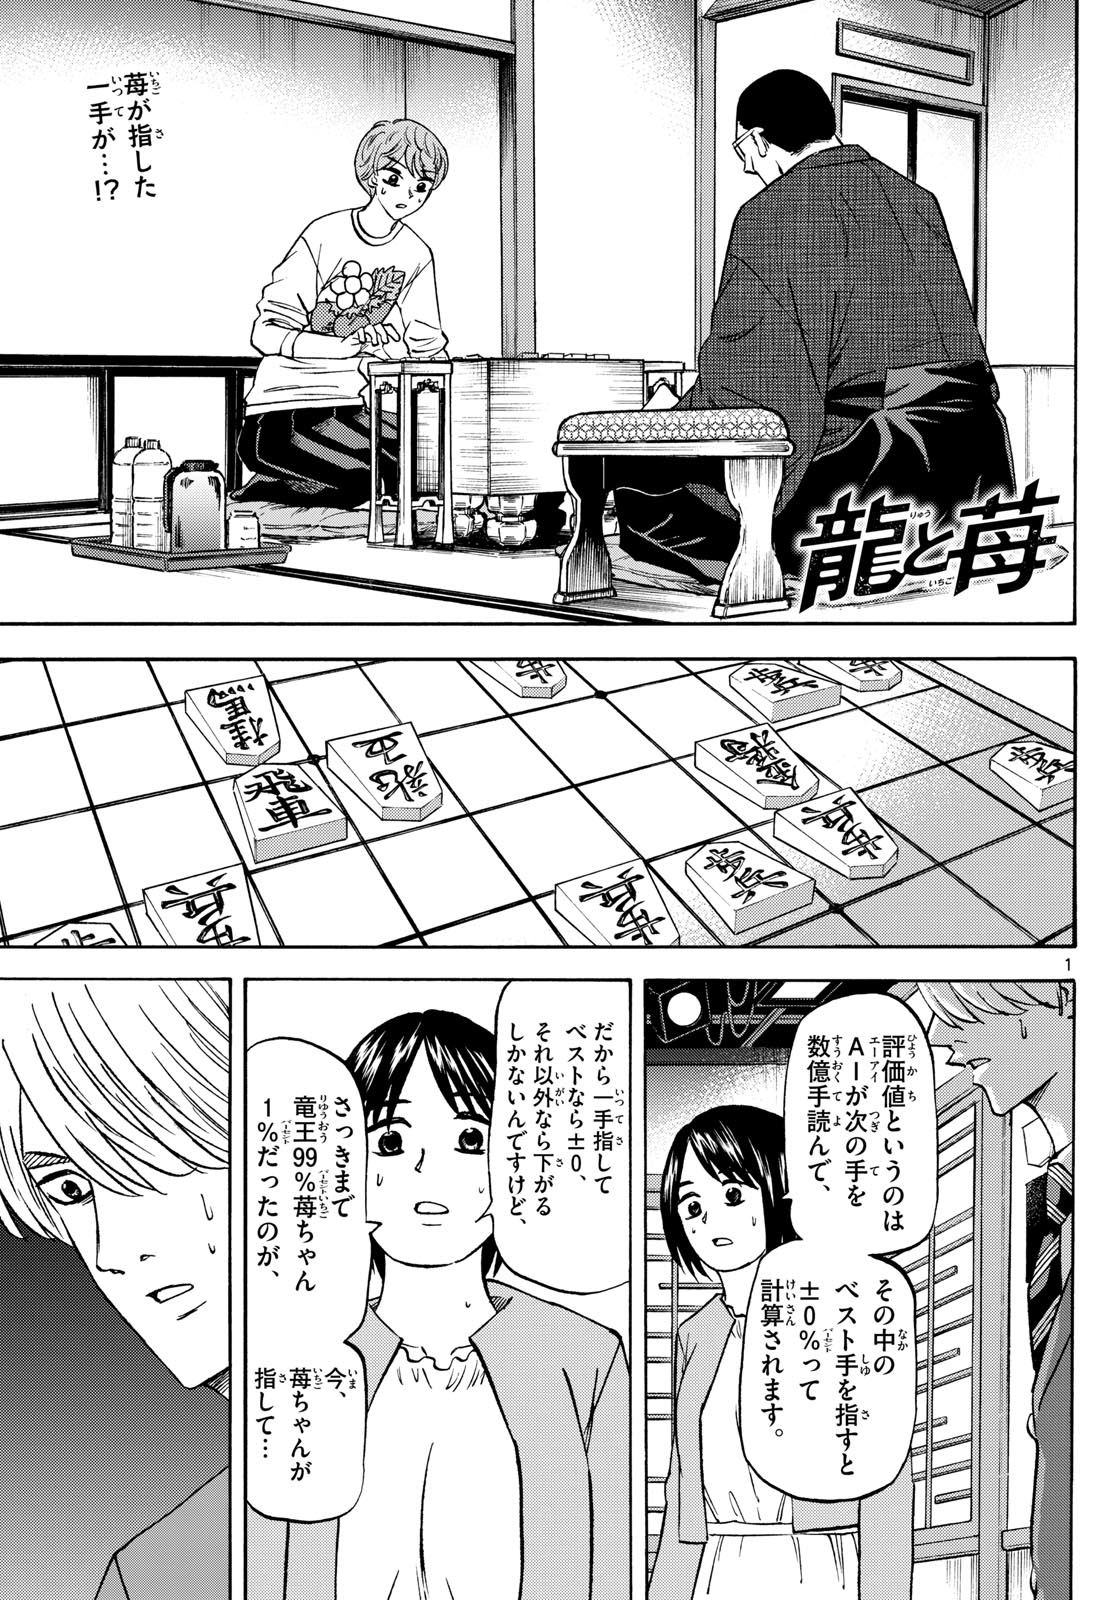 Tatsu to Ichigo - Chapter 179 - Page 1